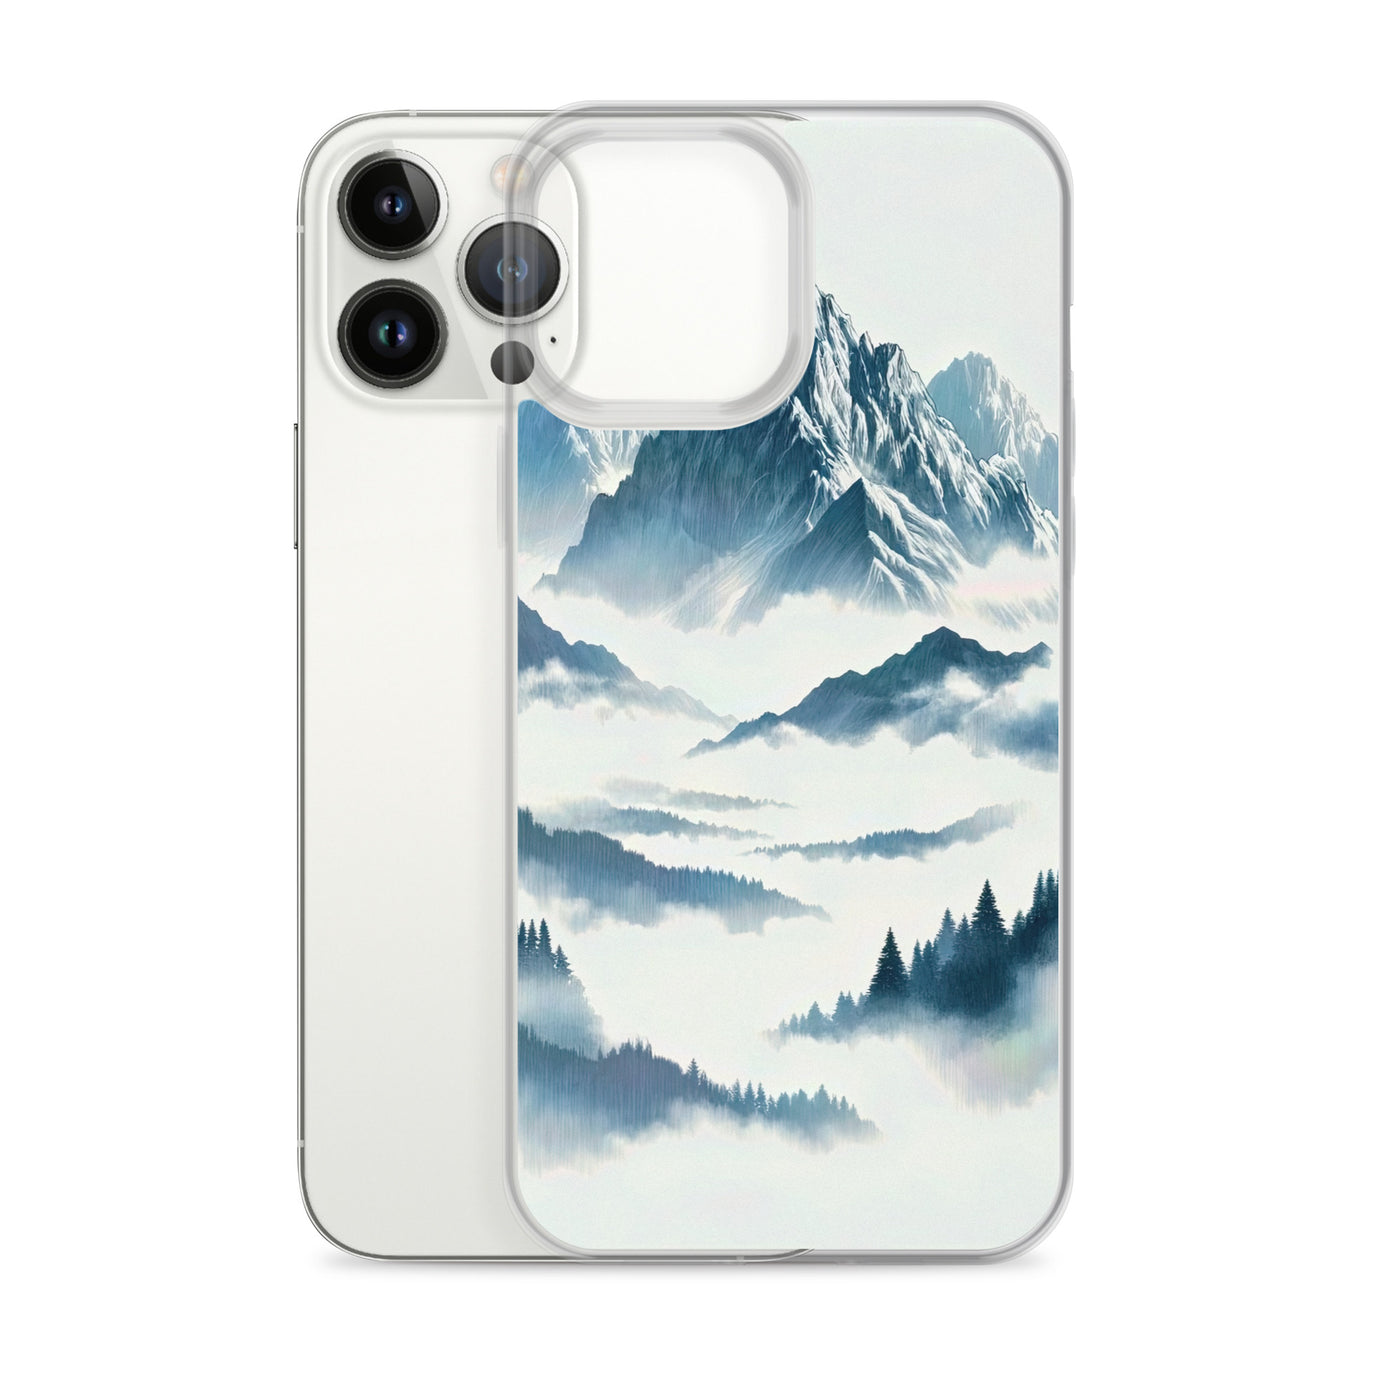 Nebeliger Alpenmorgen-Essenz, verdeckte Täler und Wälder - iPhone Schutzhülle (durchsichtig) berge xxx yyy zzz